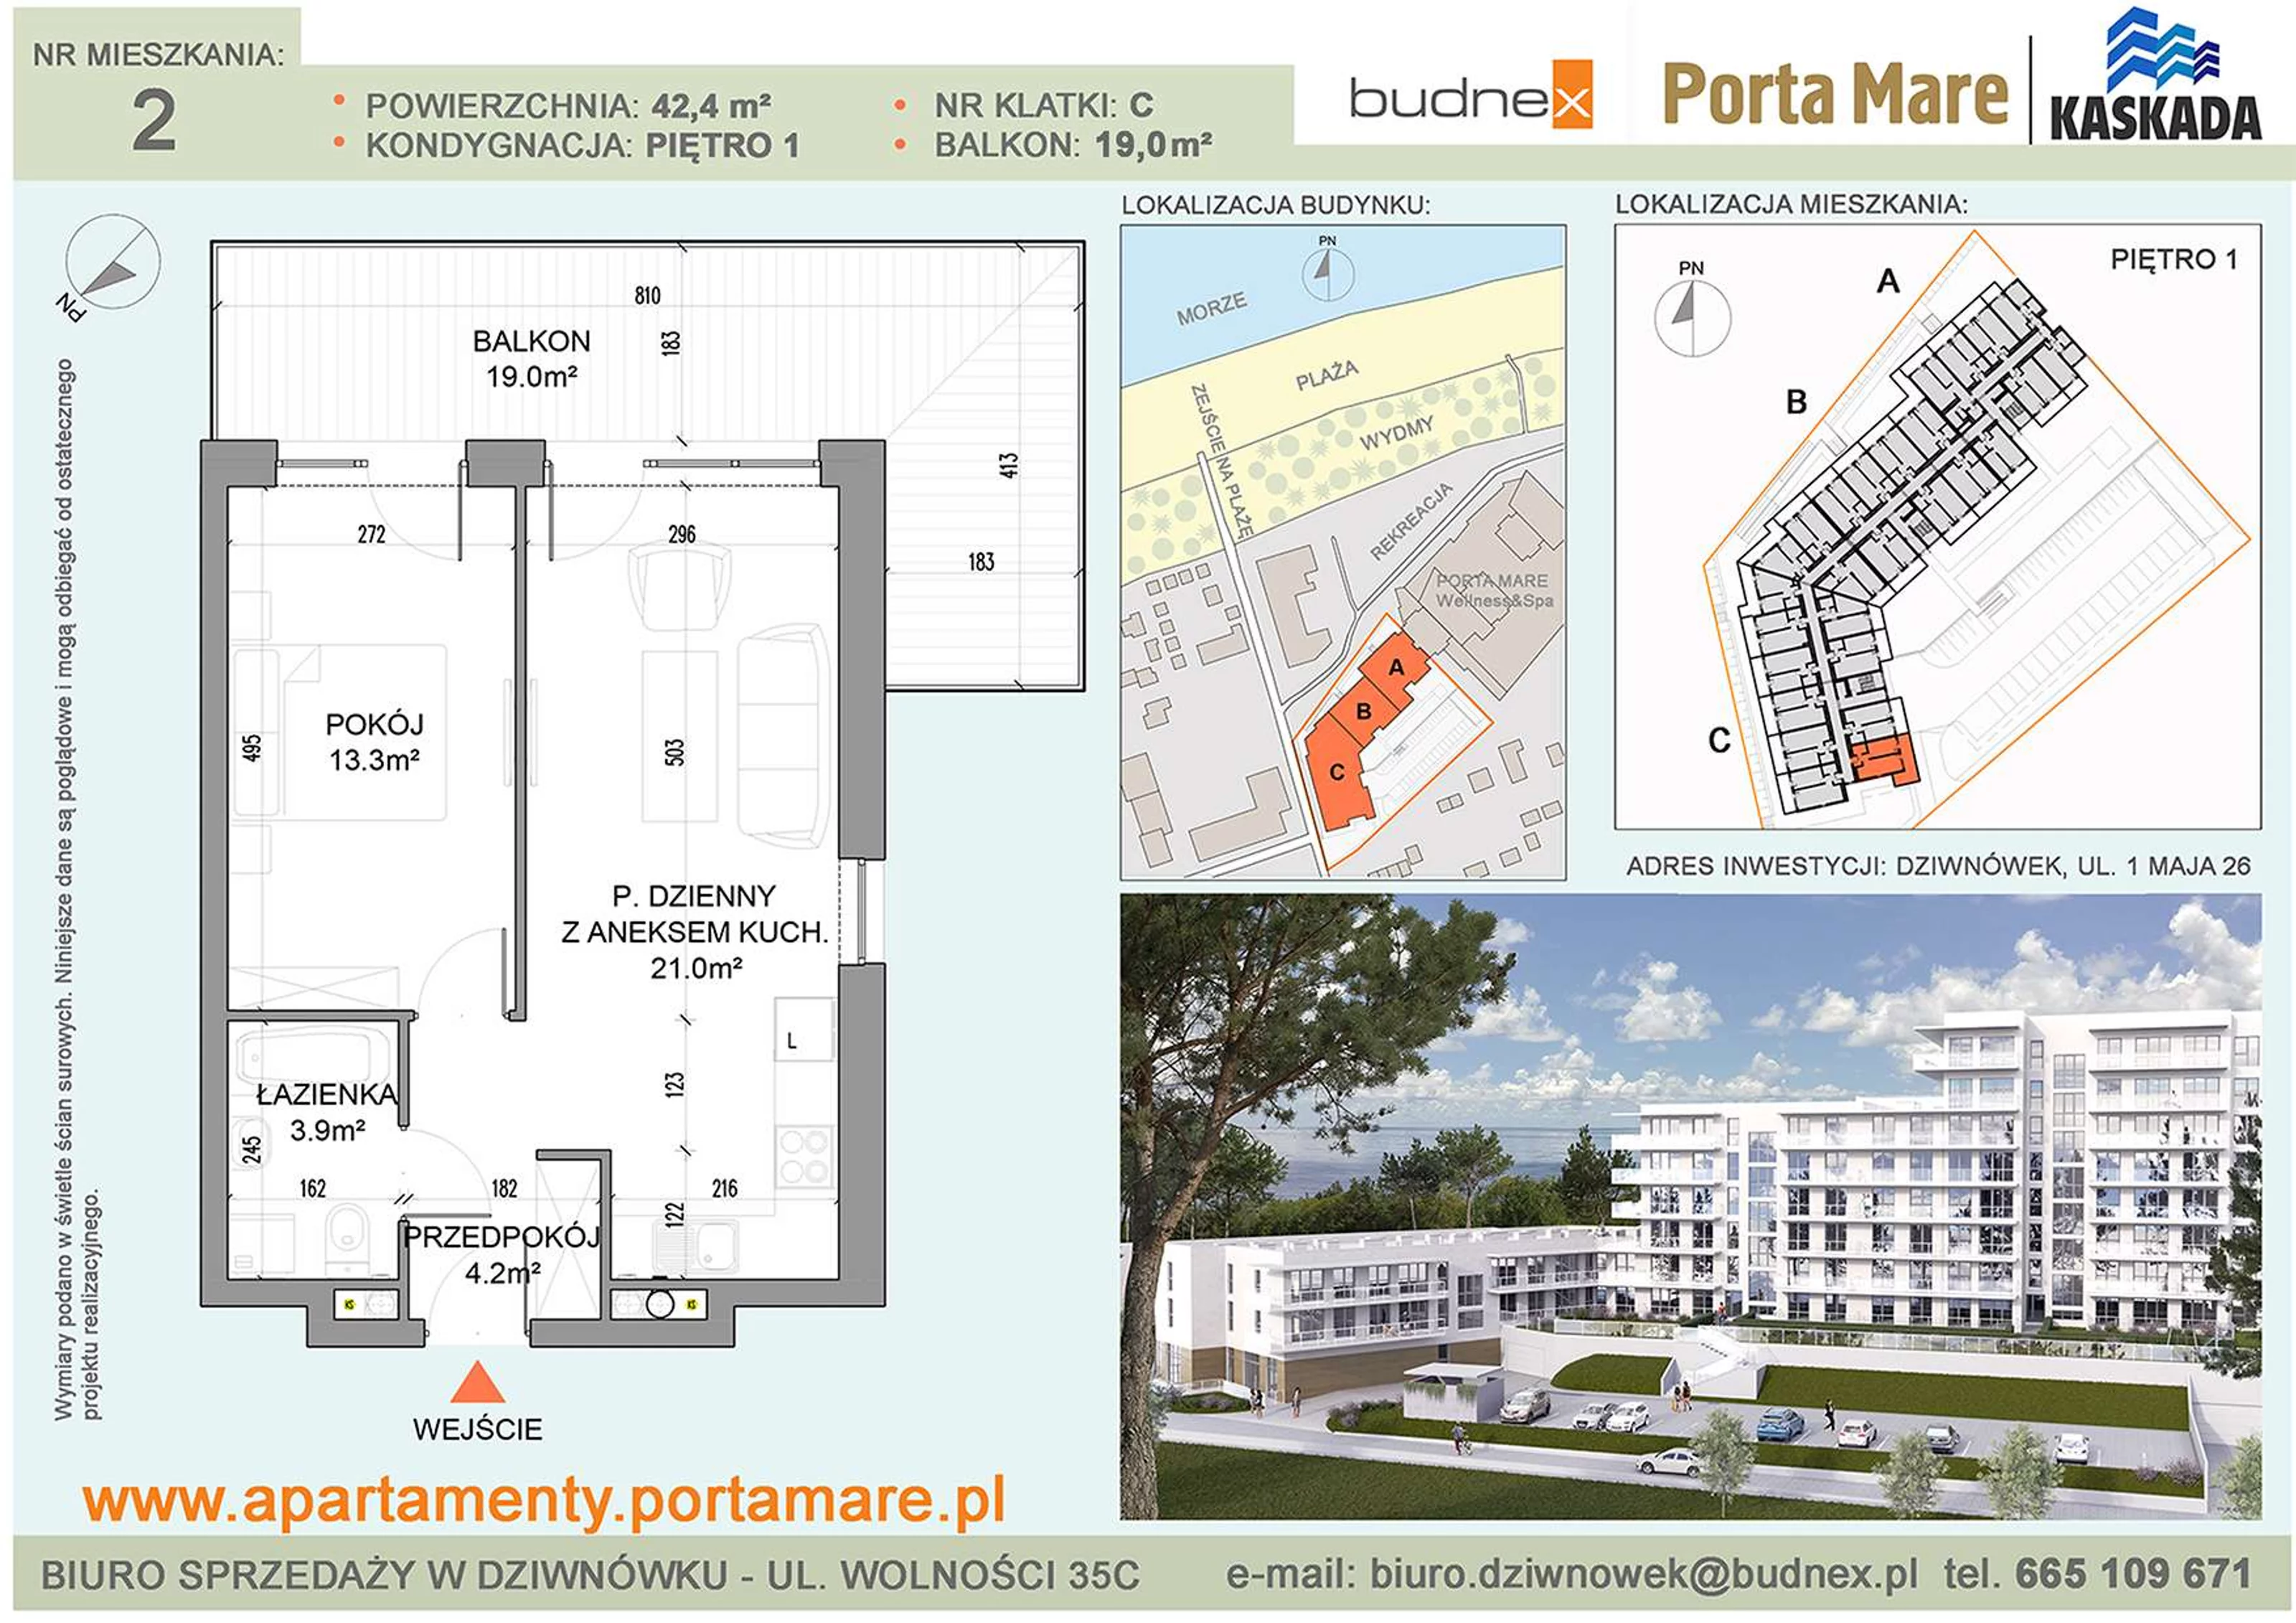 Mieszkanie 42,40 m², piętro 1, oferta nr C/M02, Porta Mare Kaskada, Dziwnówek, ul. 1 Maja 26